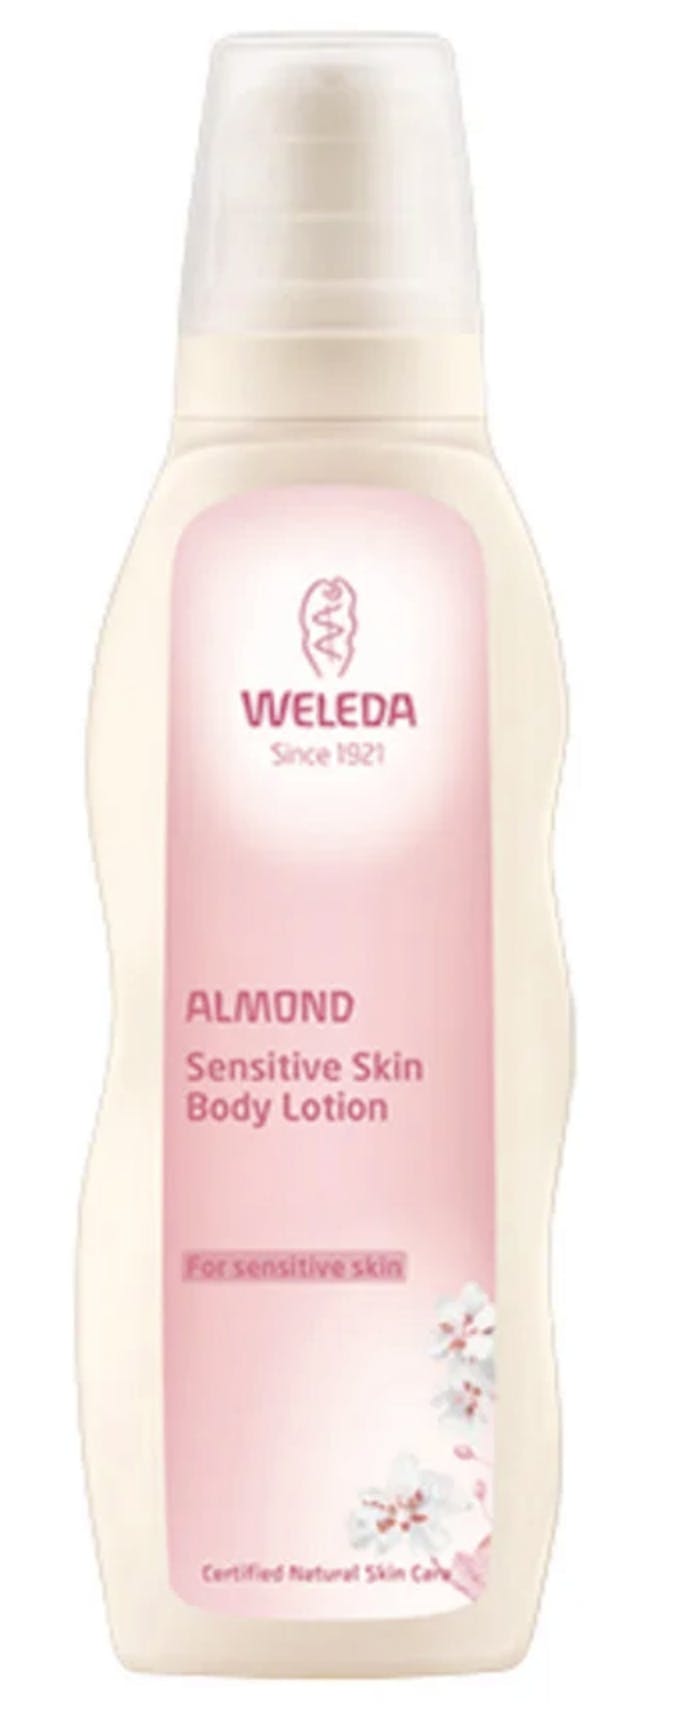 afstemning halv otte væv Weleda Almond Sensitive Skin Body Lotion 200 ml - 89.95 kr